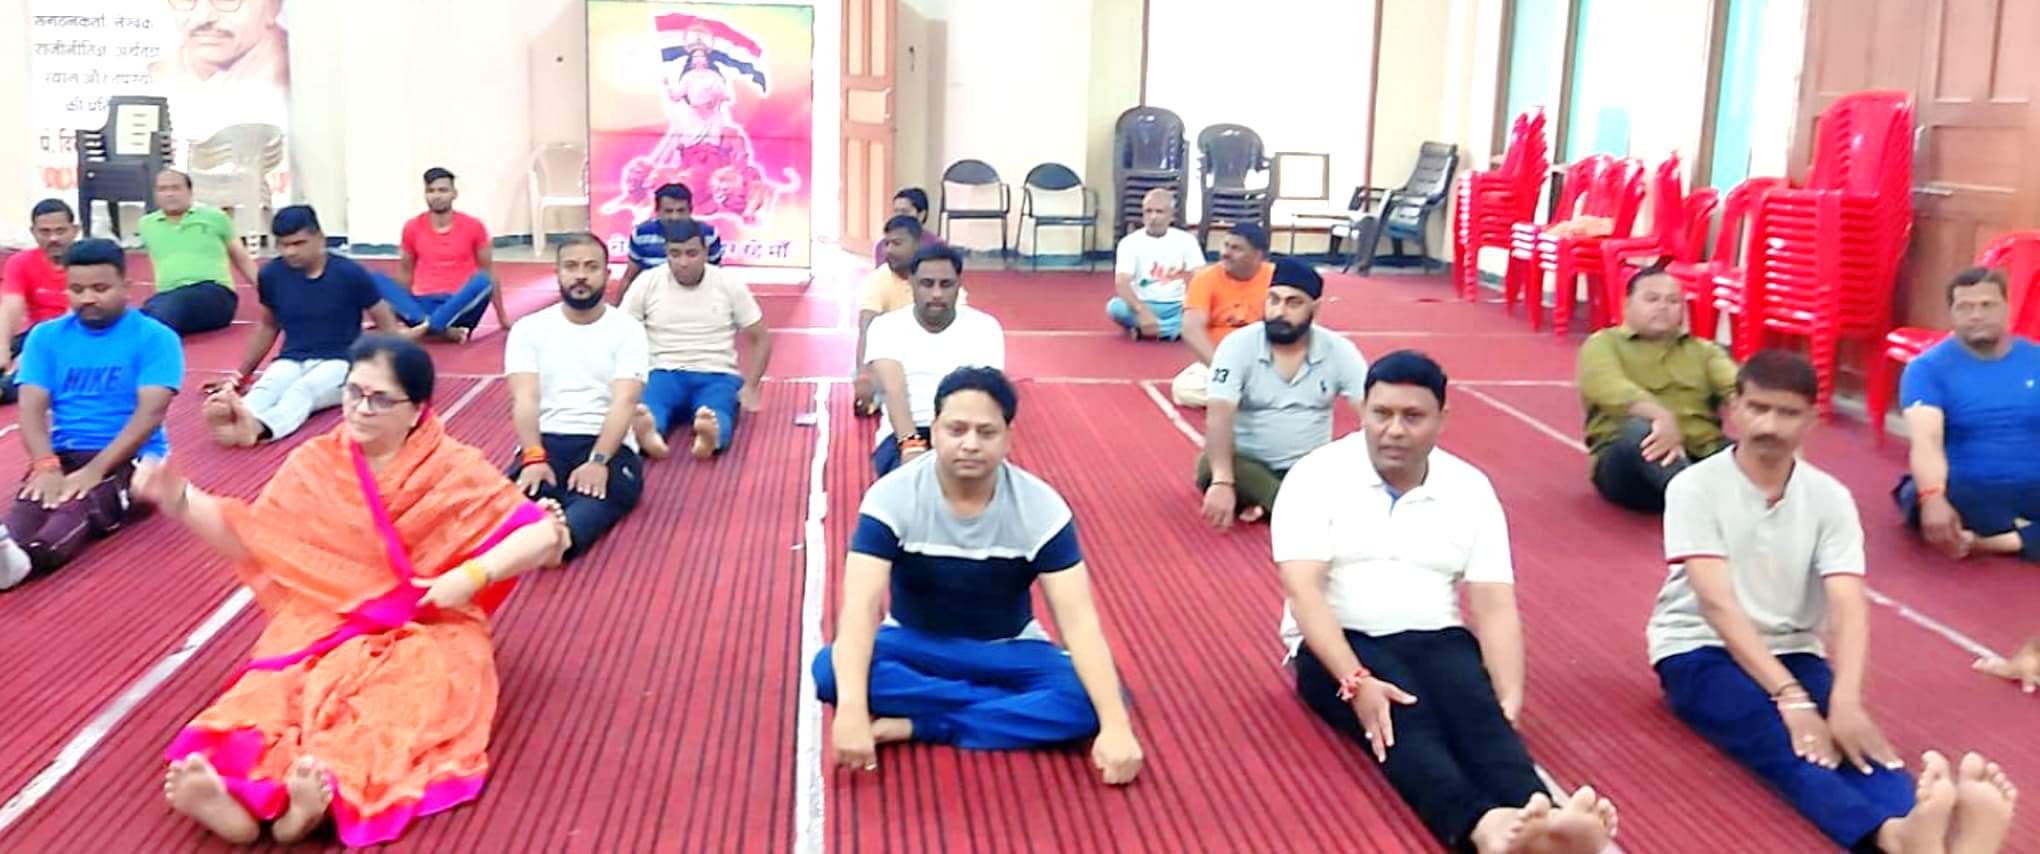 अंतर्राष्ट्रीय योग दिवस पर भाजपा कार्यकर्ताओं को सामूहिक रुप से कराया गया योगाभ्यास | New India Times